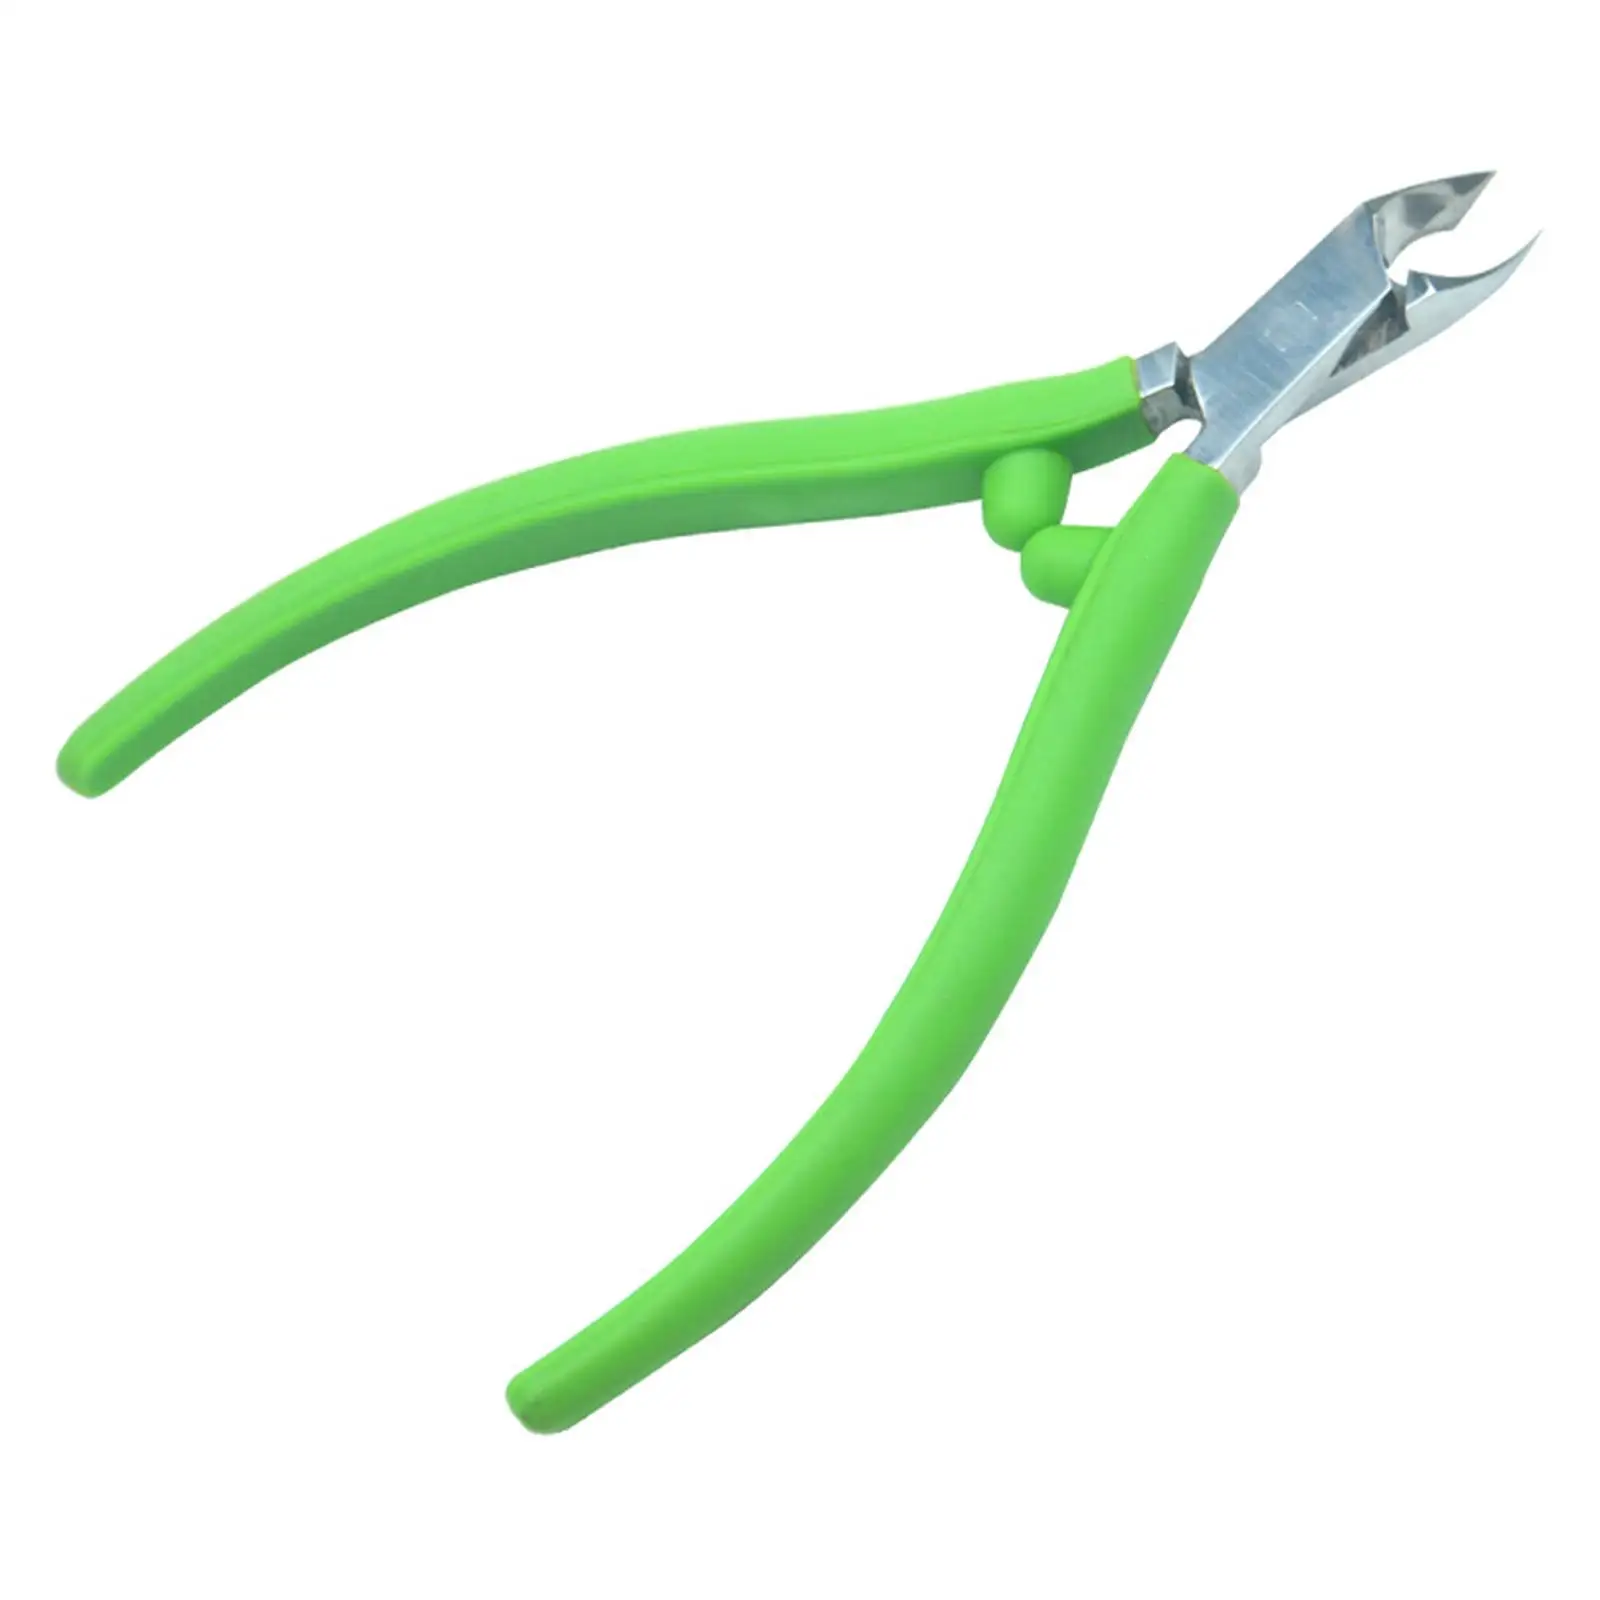 Cuticle Nipper Trimming Professional Scissor for Home Fingernails Toenails